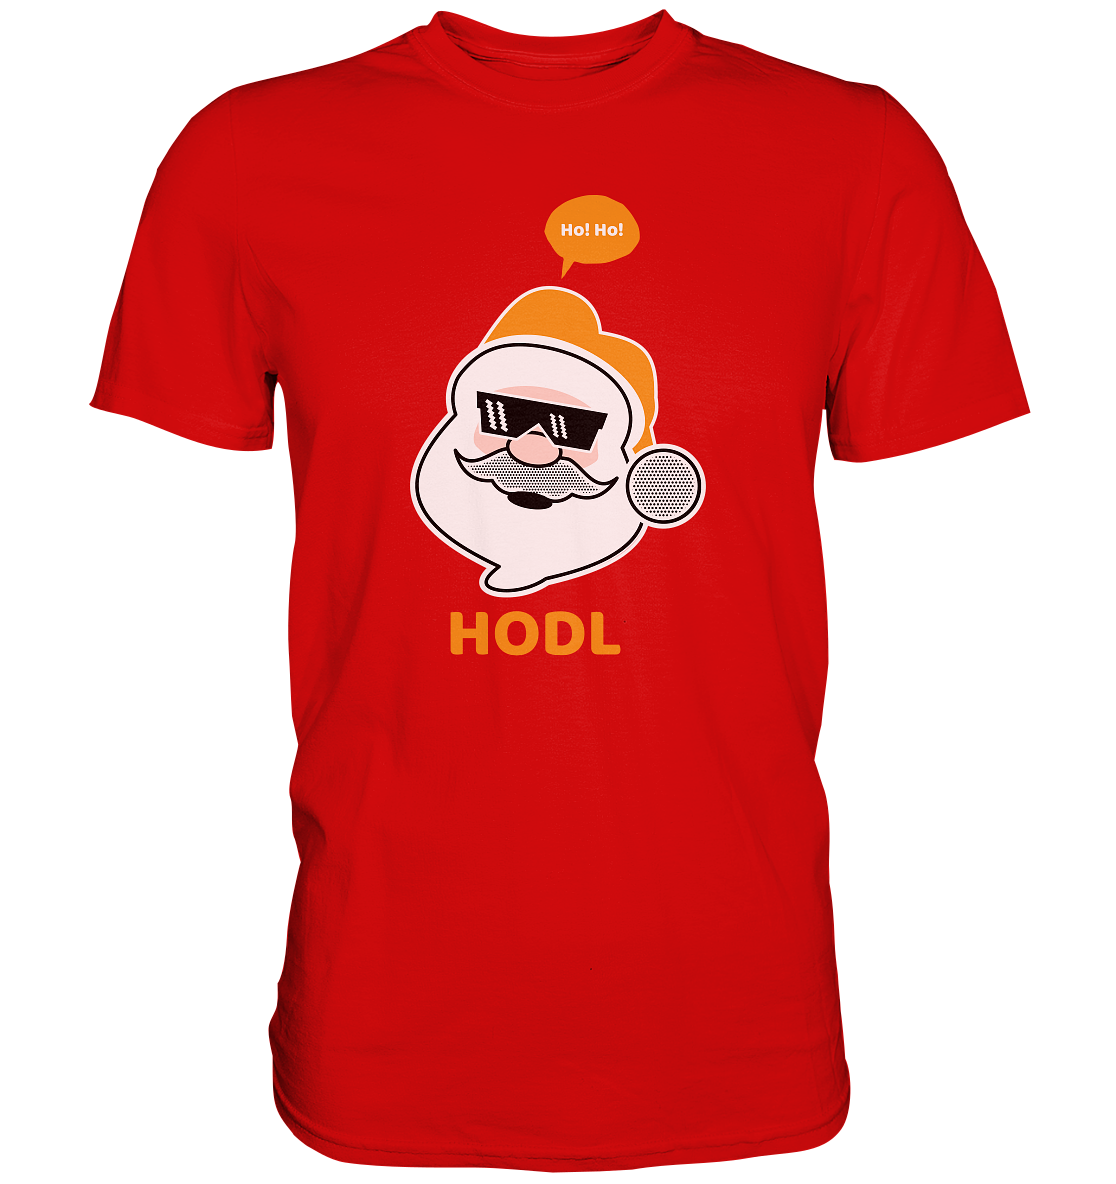 Bitcoin "Ho Ho Hodl" - Premium Shirt